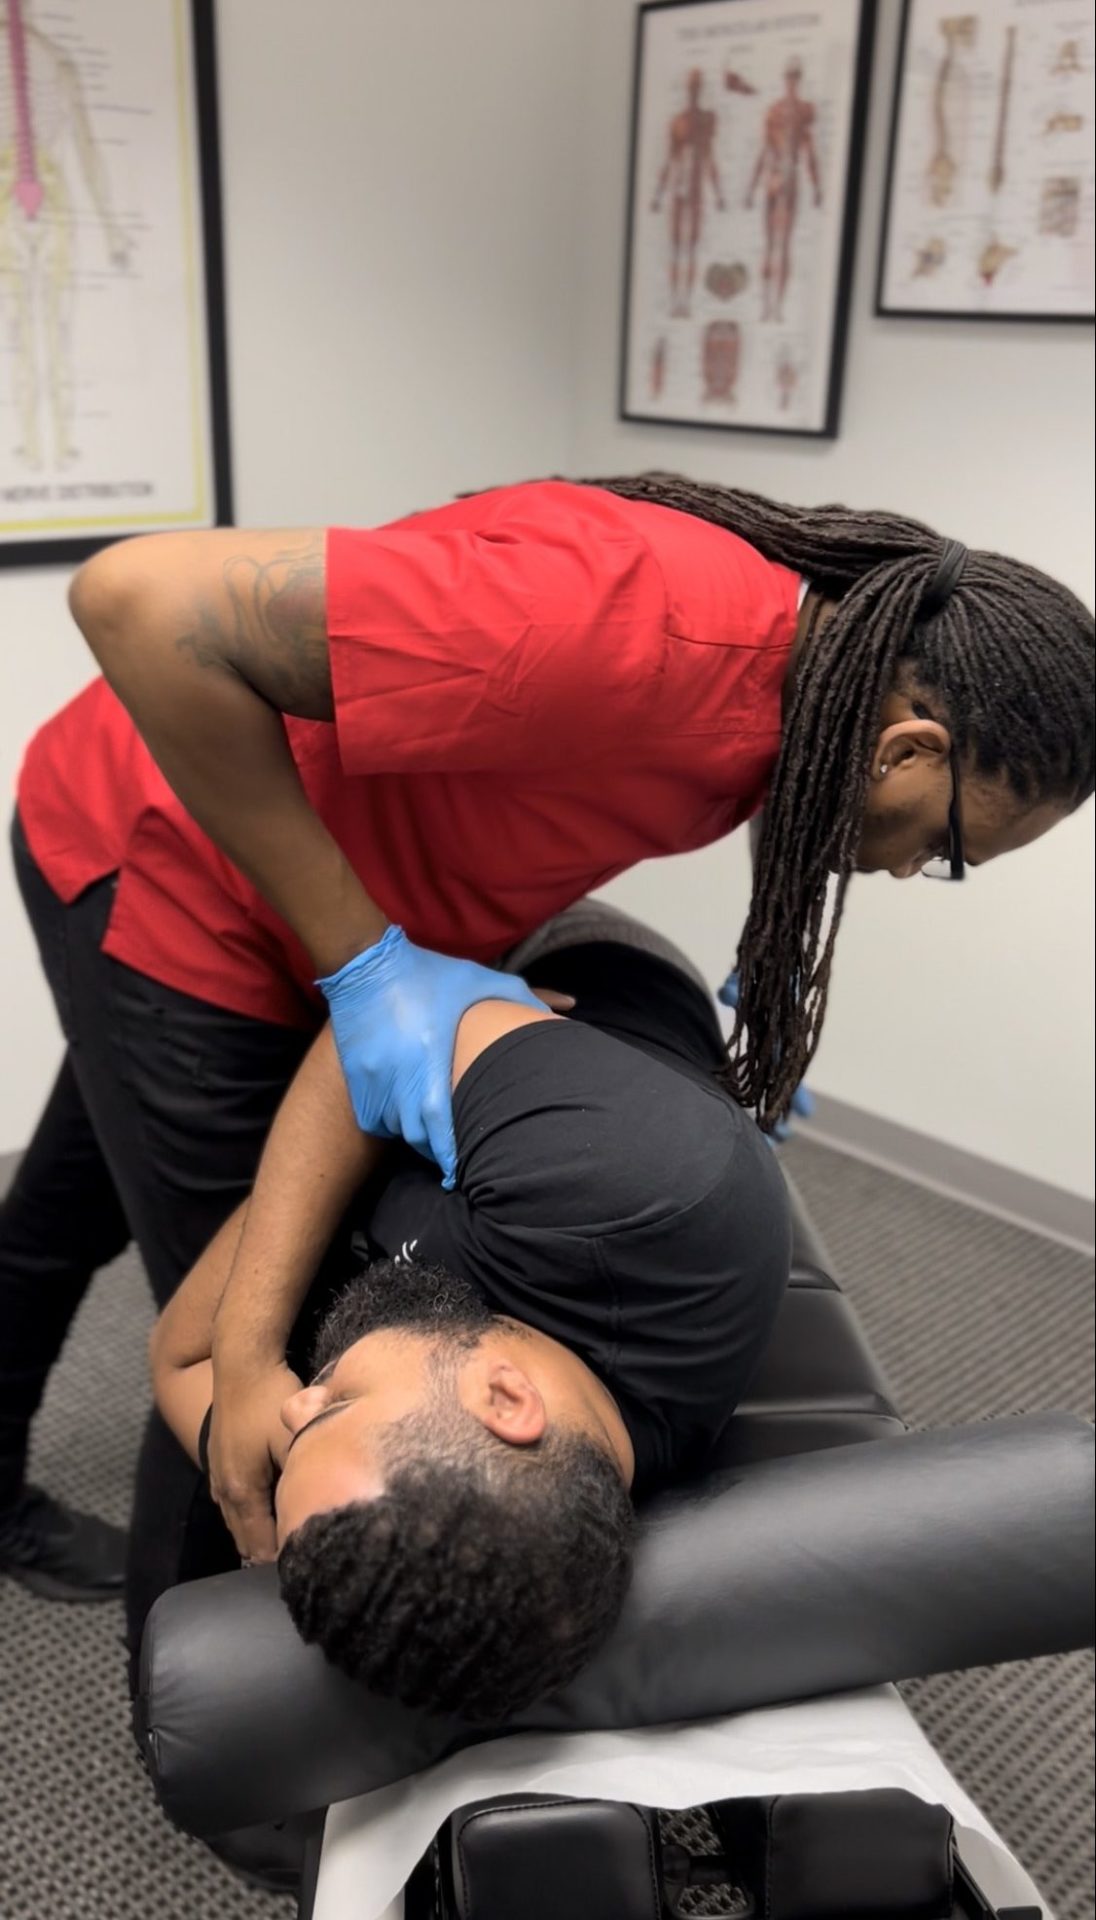 Dr. Bain adjusting spine of patient